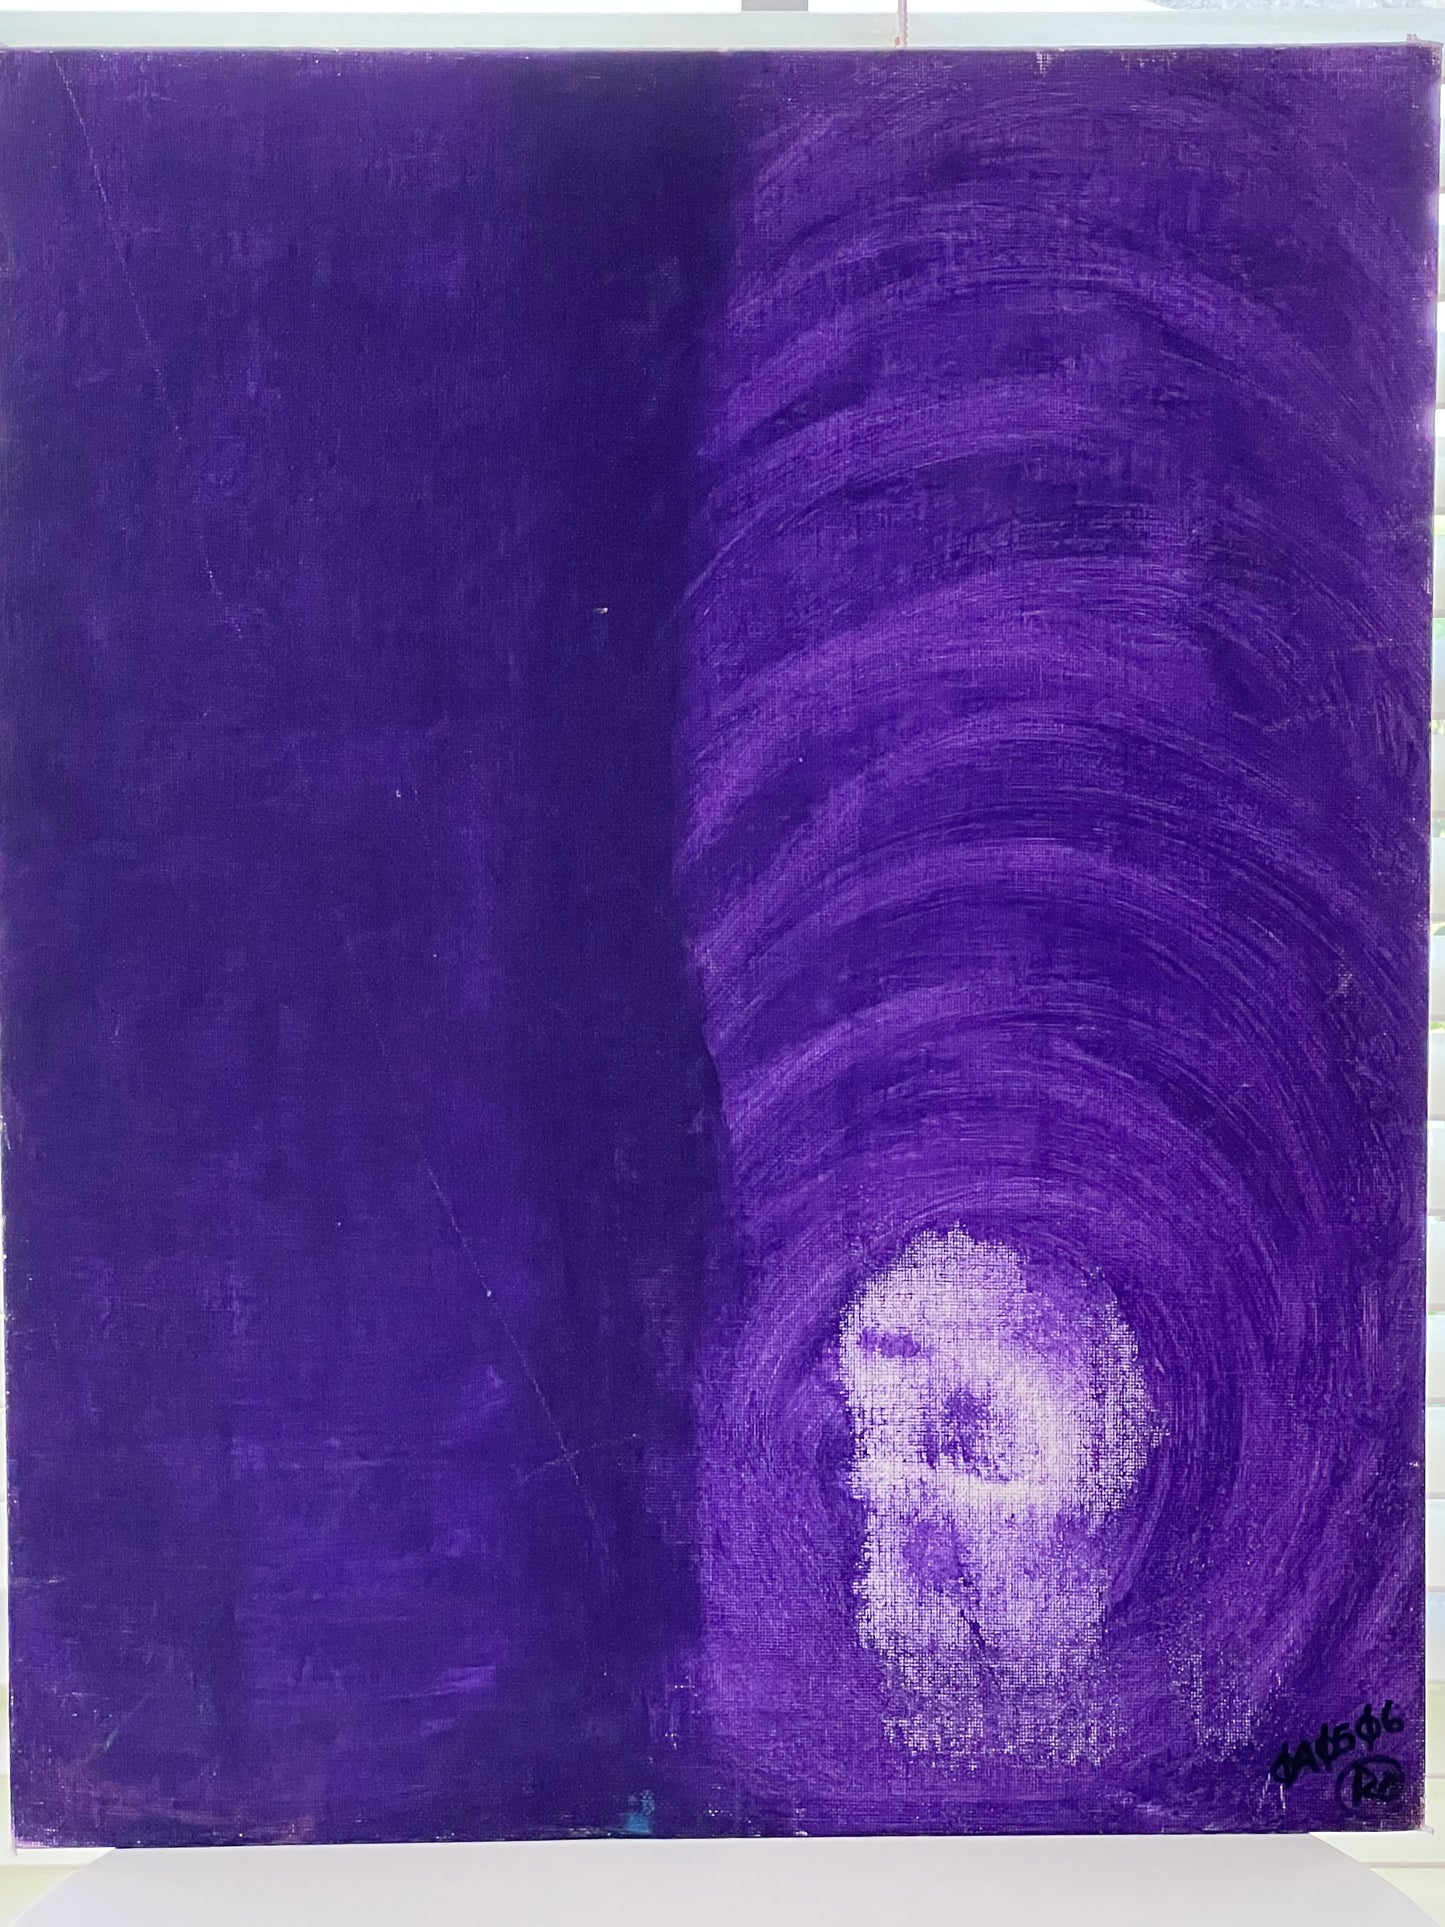 Rikk Agnew "Purple Limbo" (2006)